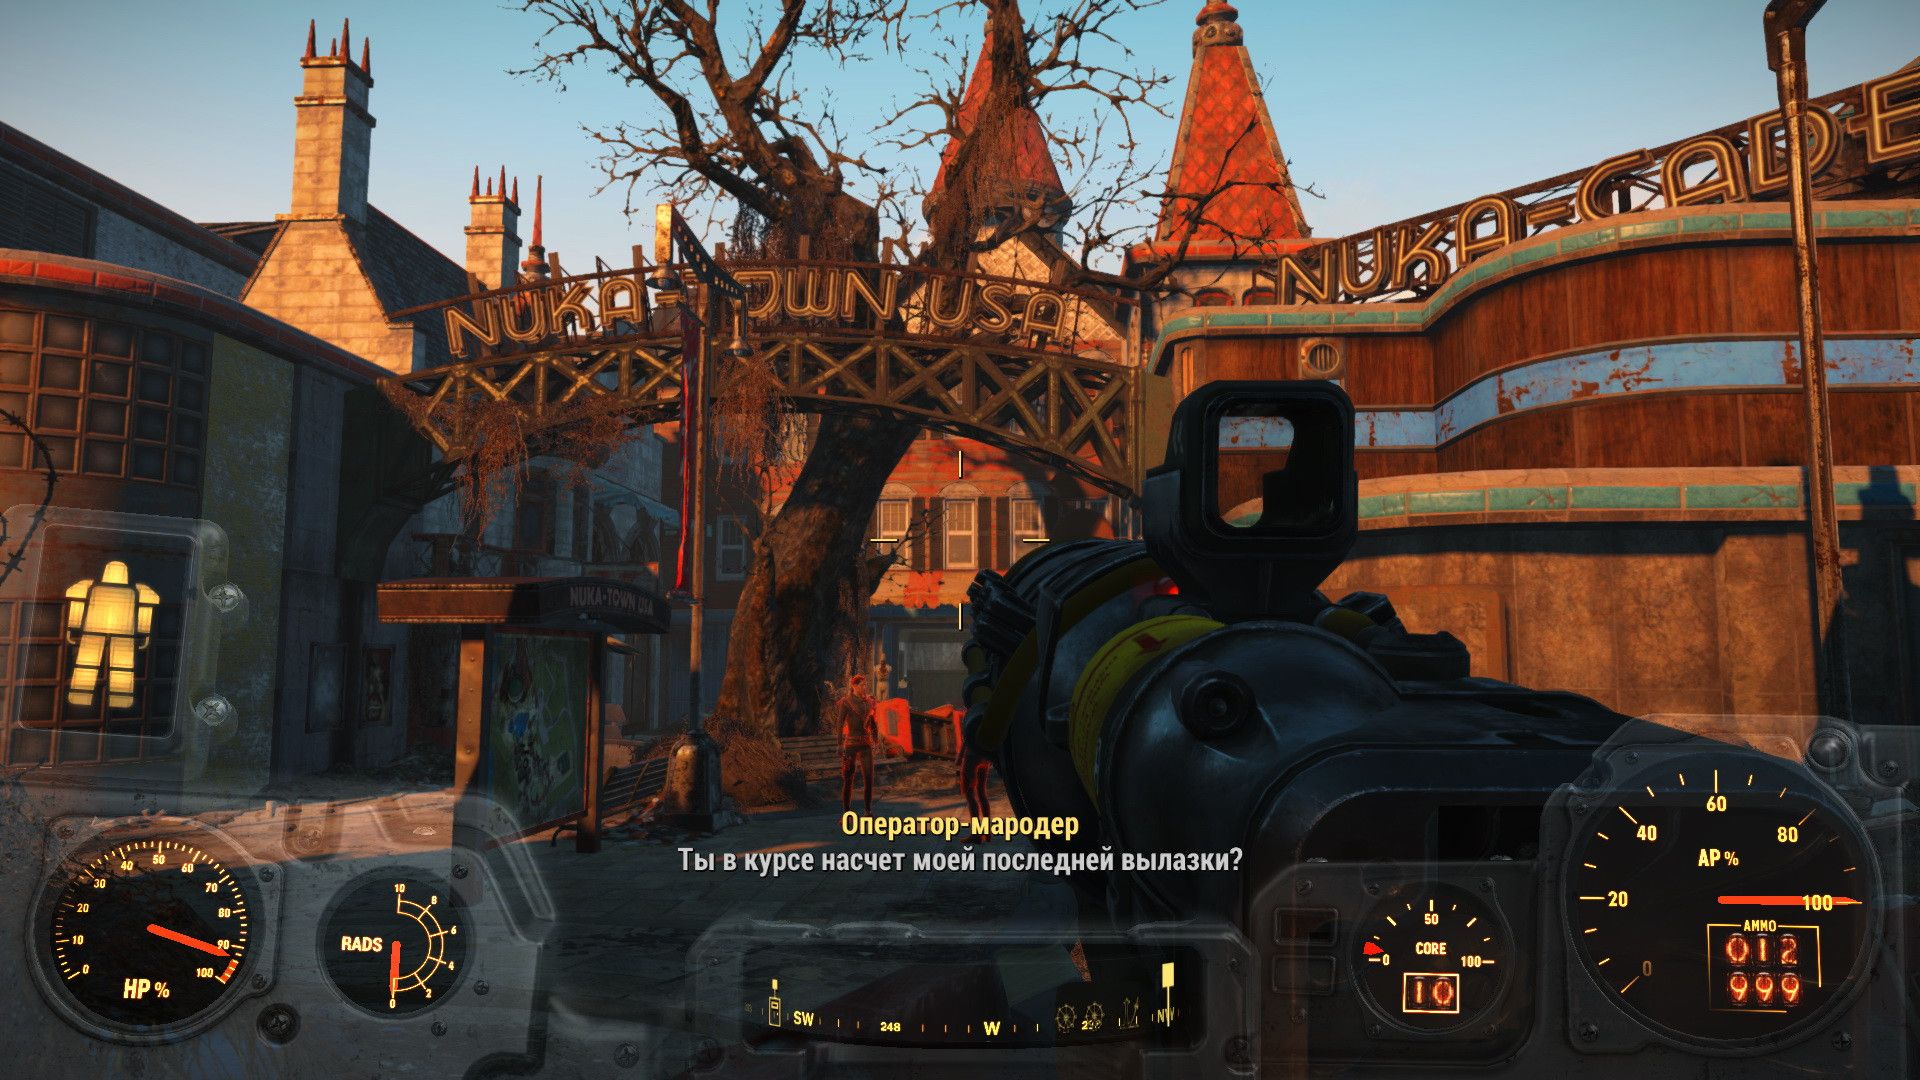 Fallout 4 nuka world концовки фото 89